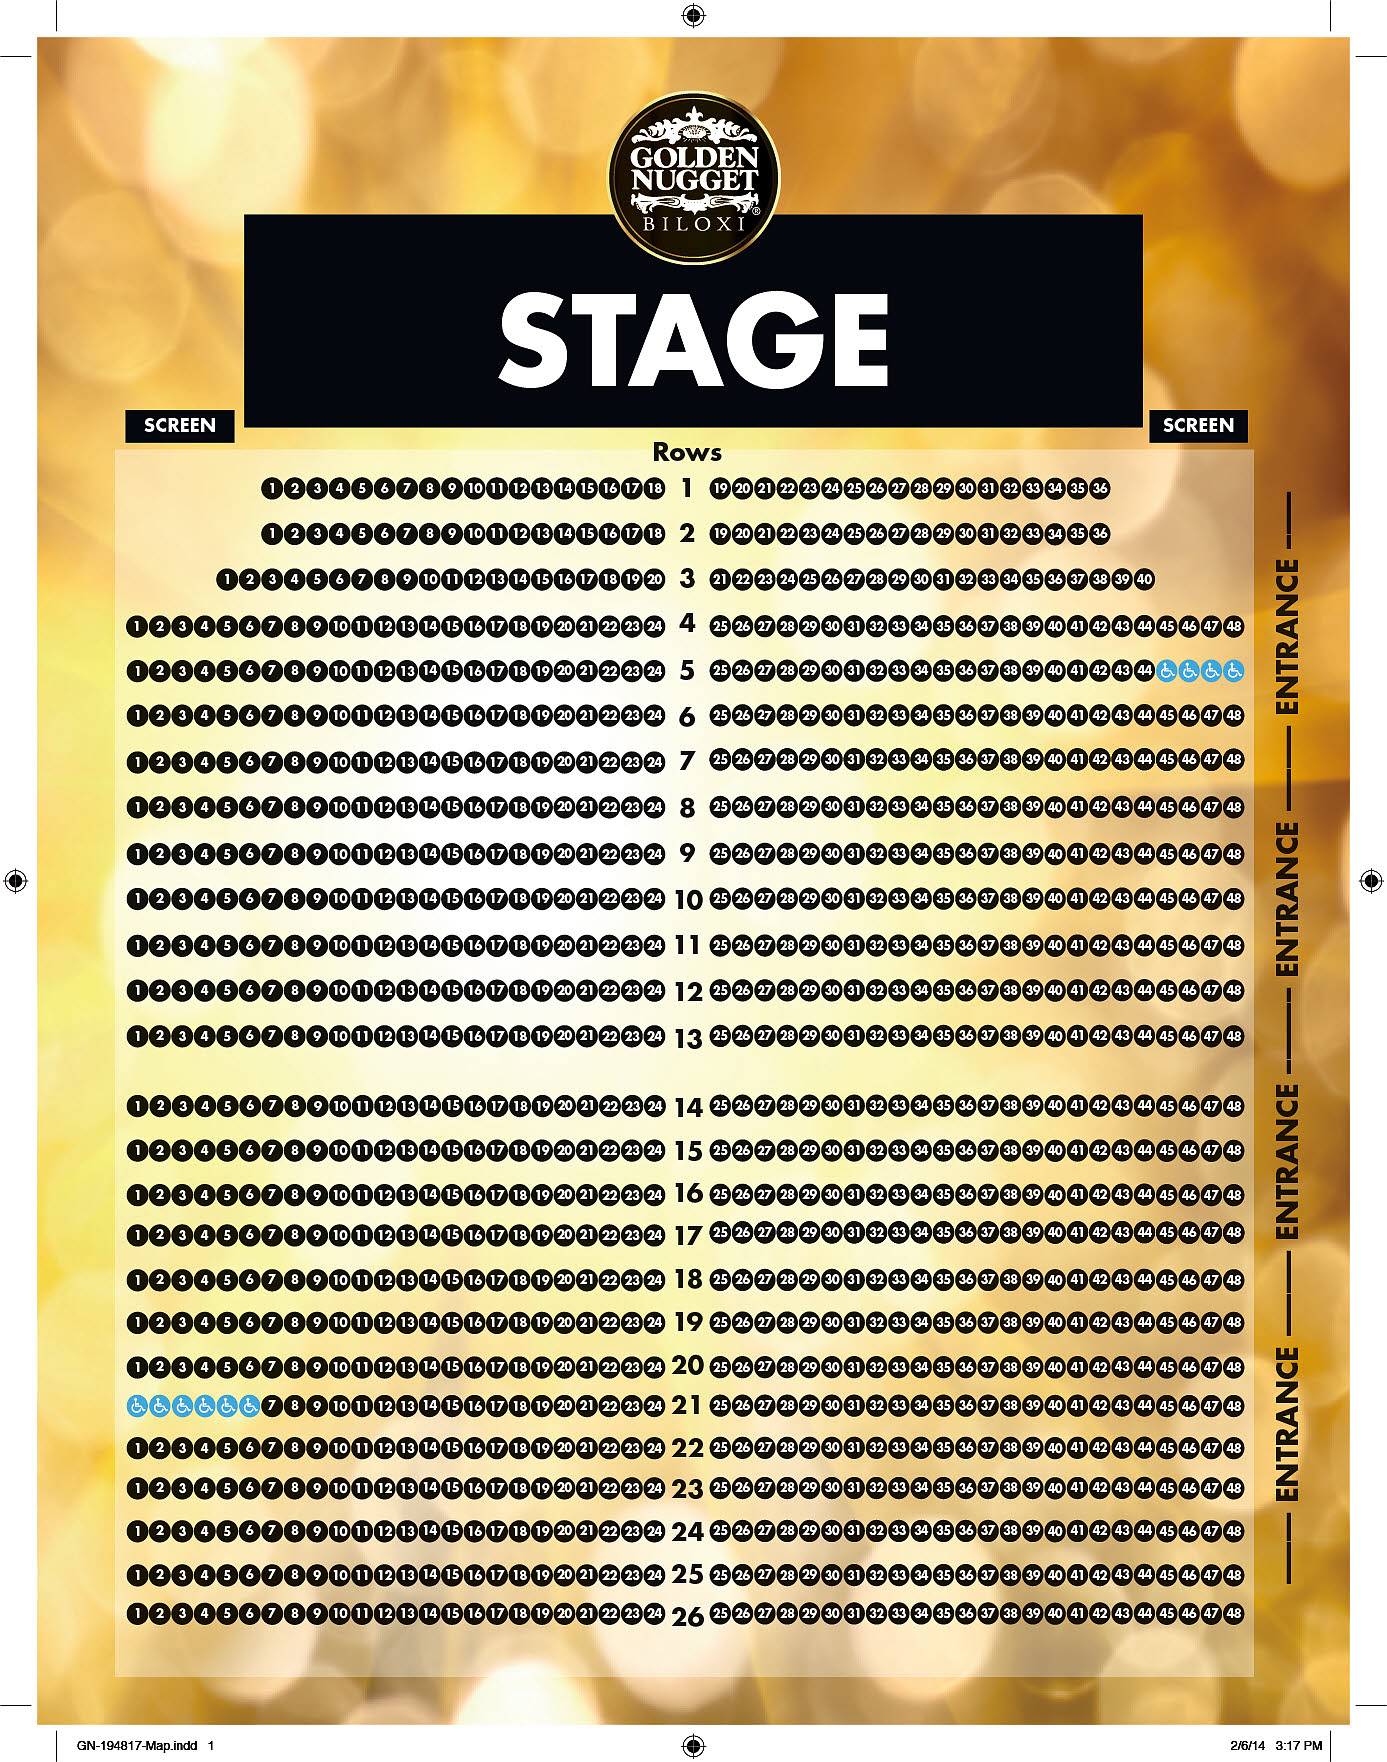 Golden Nugget Seating Chart Las Vegas